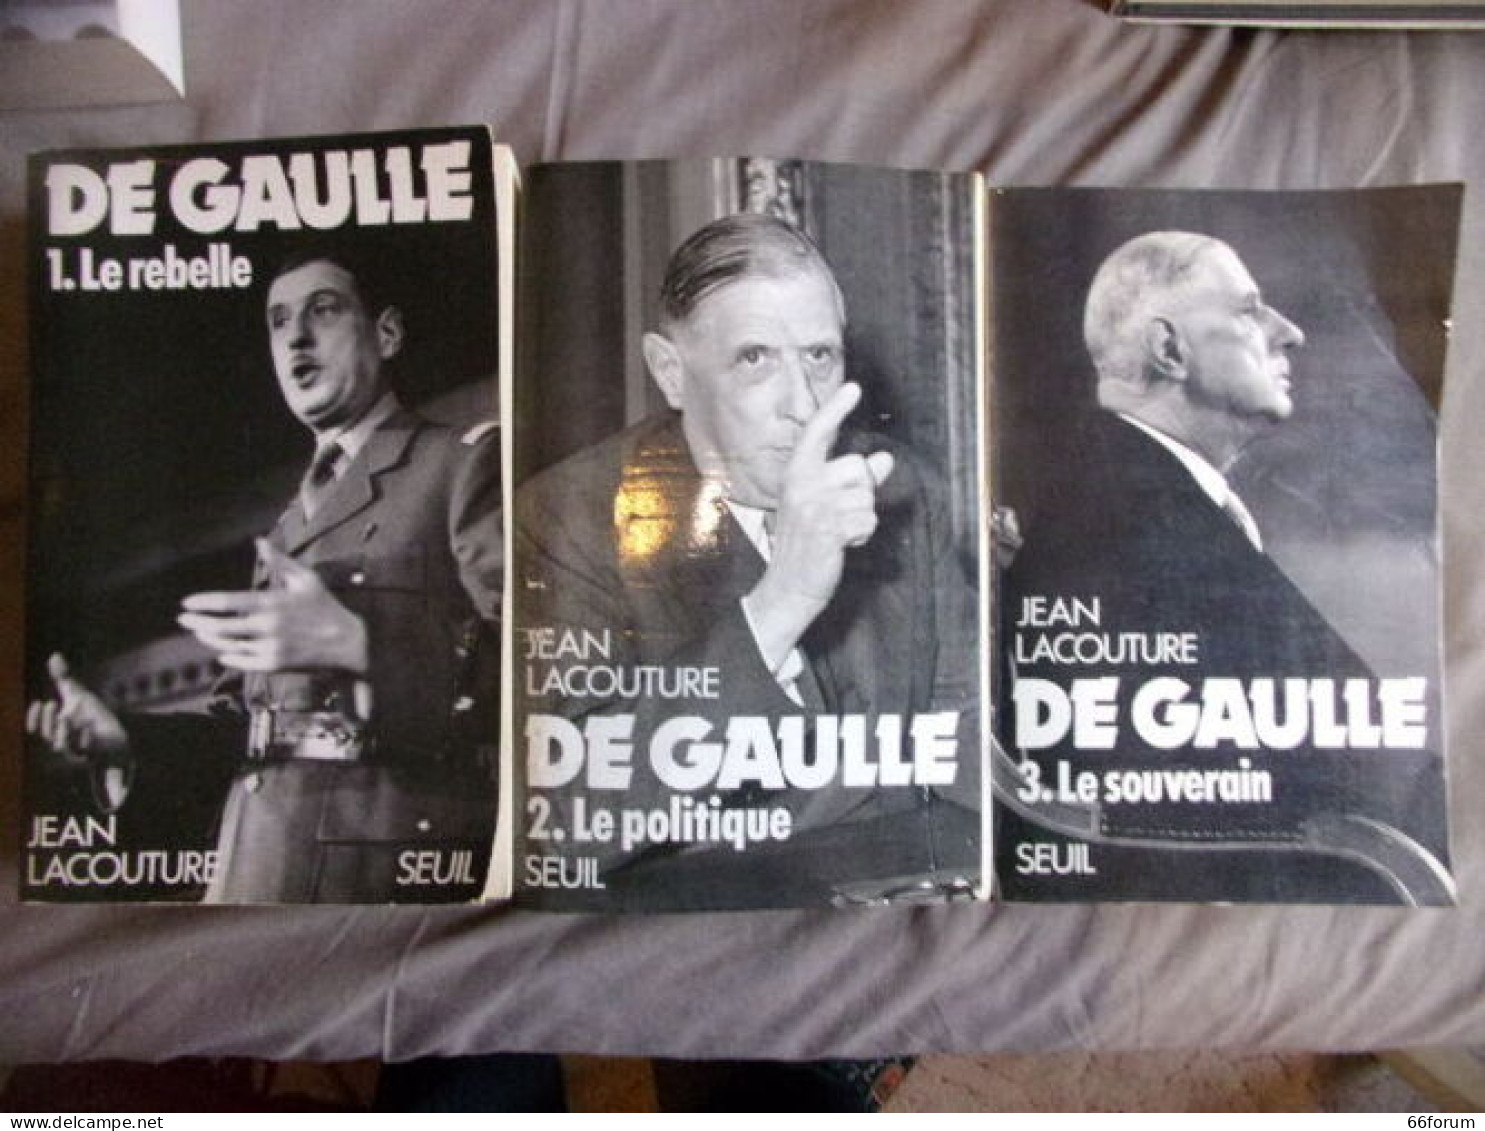 De Gaulle--1 Mlr Rebelle- 2 Le Politique- 32 Le Souverain - History